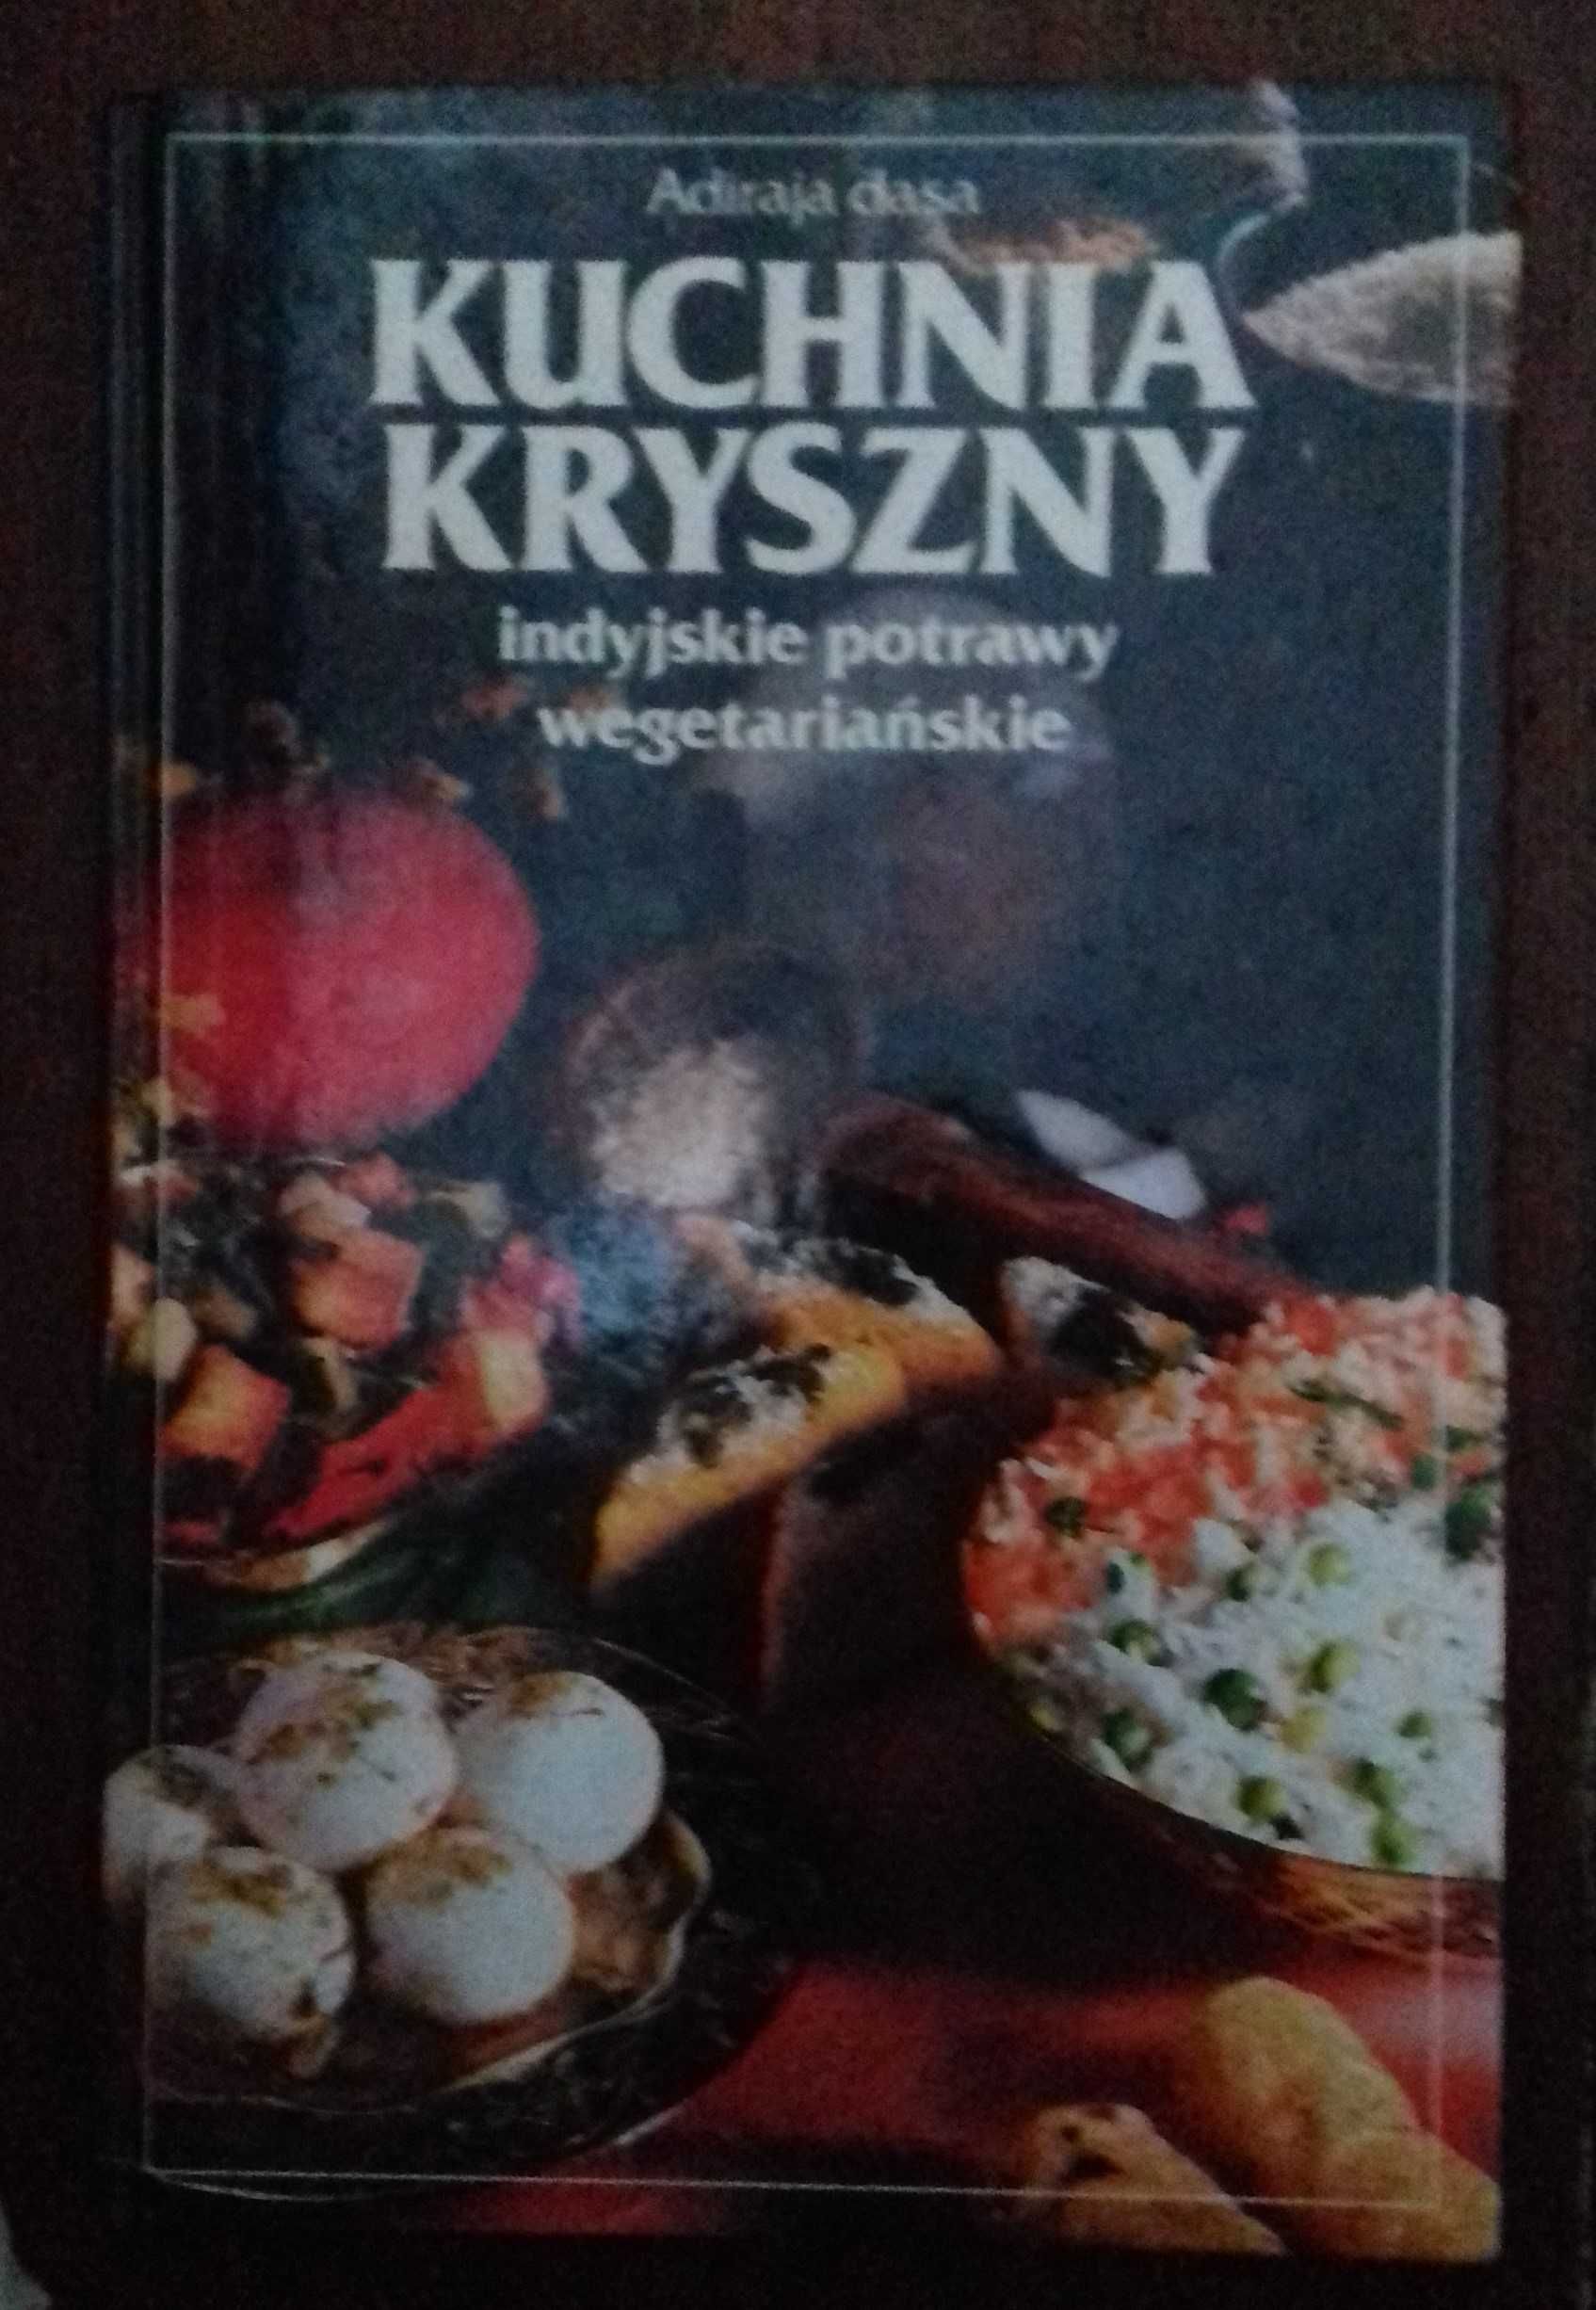 Kuchnia Kryszny. Indijskie potrawy wegetariańskie - Adiraja dasa